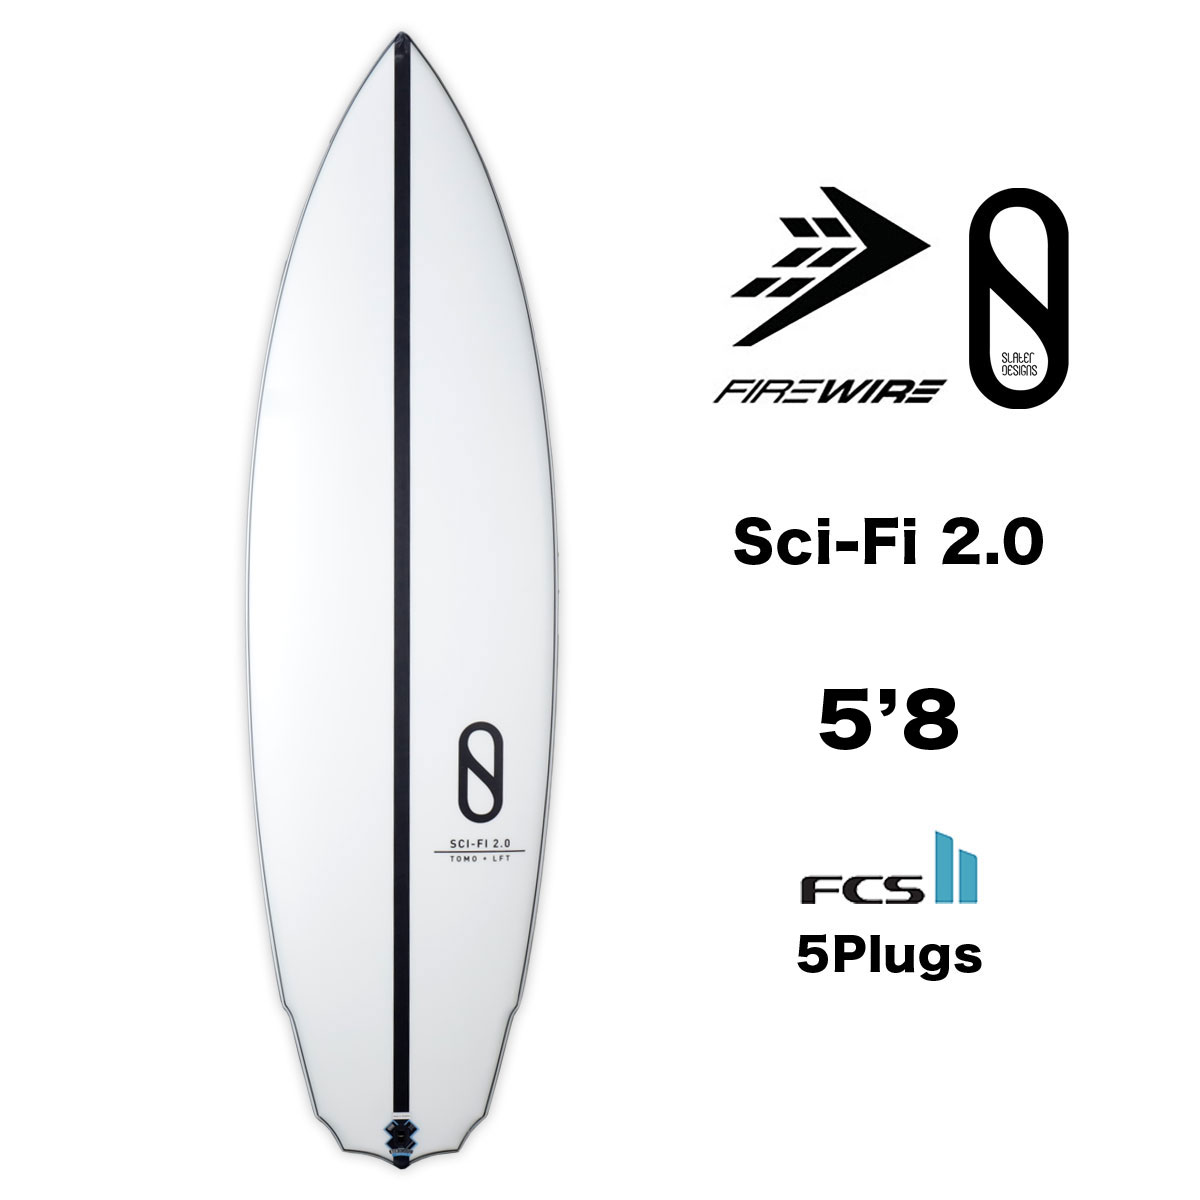 ファイヤーワイヤー サーフボード サイファイ 5.8 5フィン FIREWIRE SURFBOARD Sci-Fi 2.0 ショートボード サーフィン  即納 5'8【8610262】